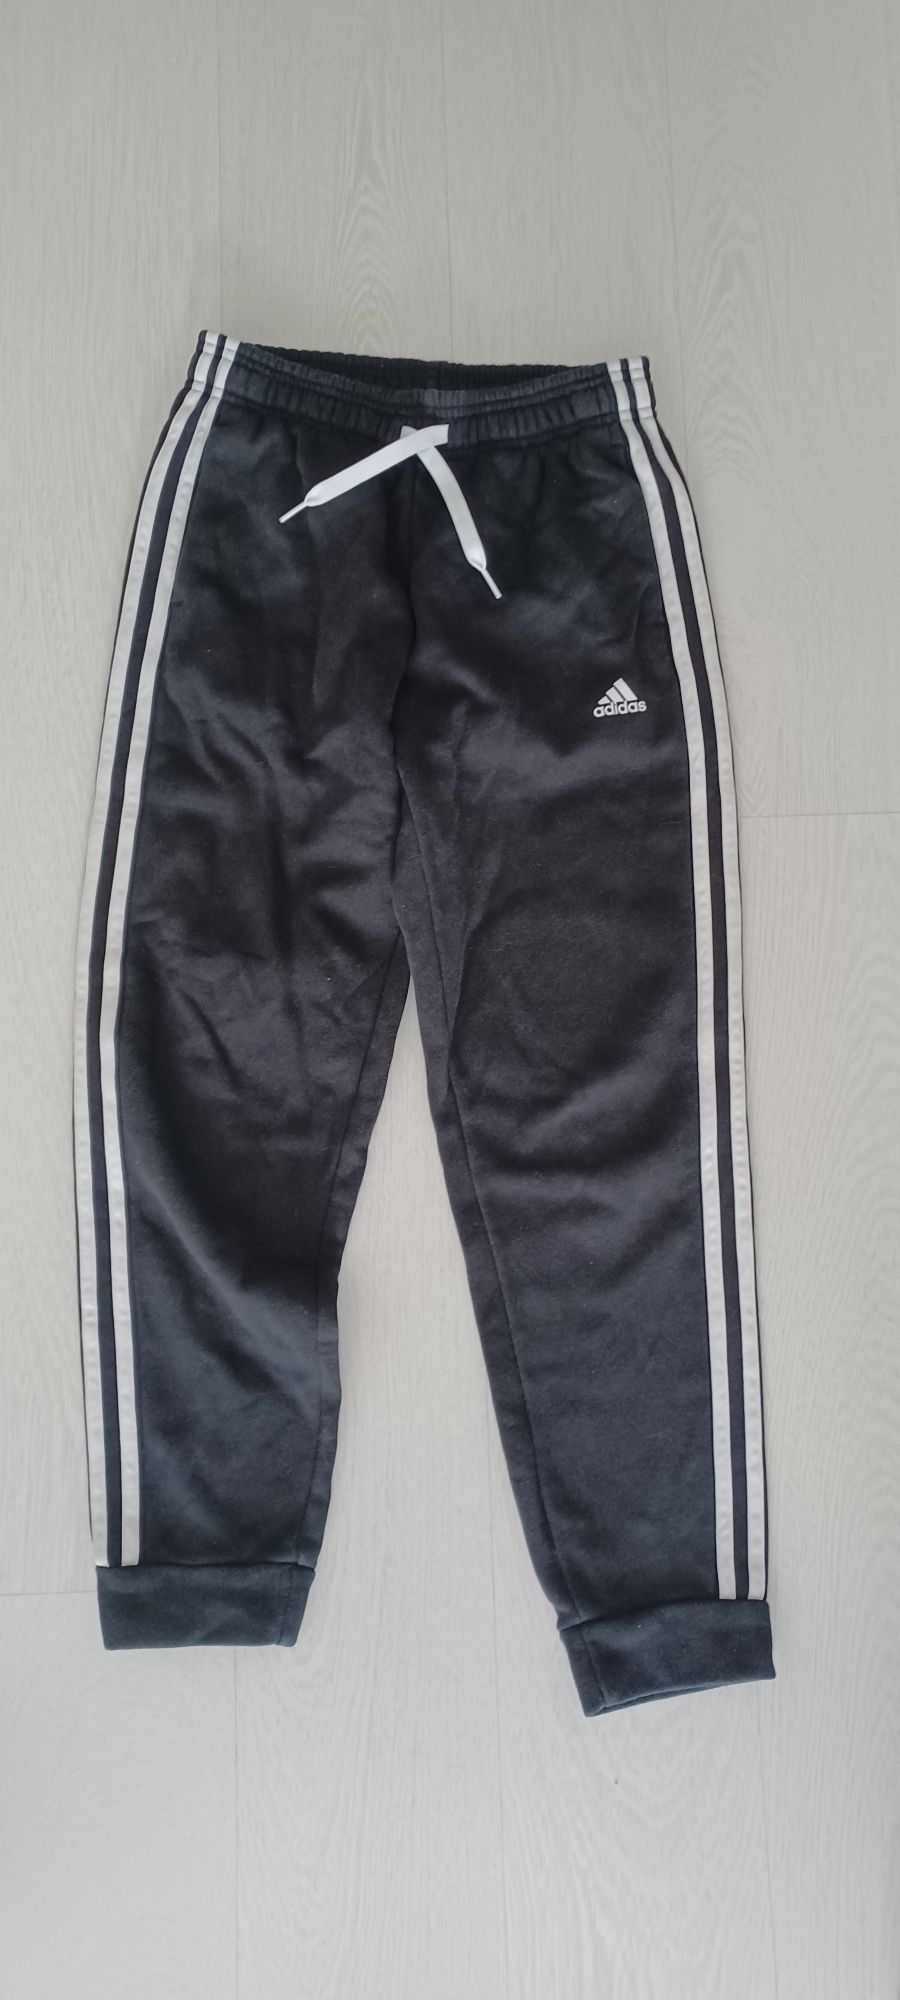 Spodnie bawełniane z kieszeniami firmy Adidas na 152 dtan bdb